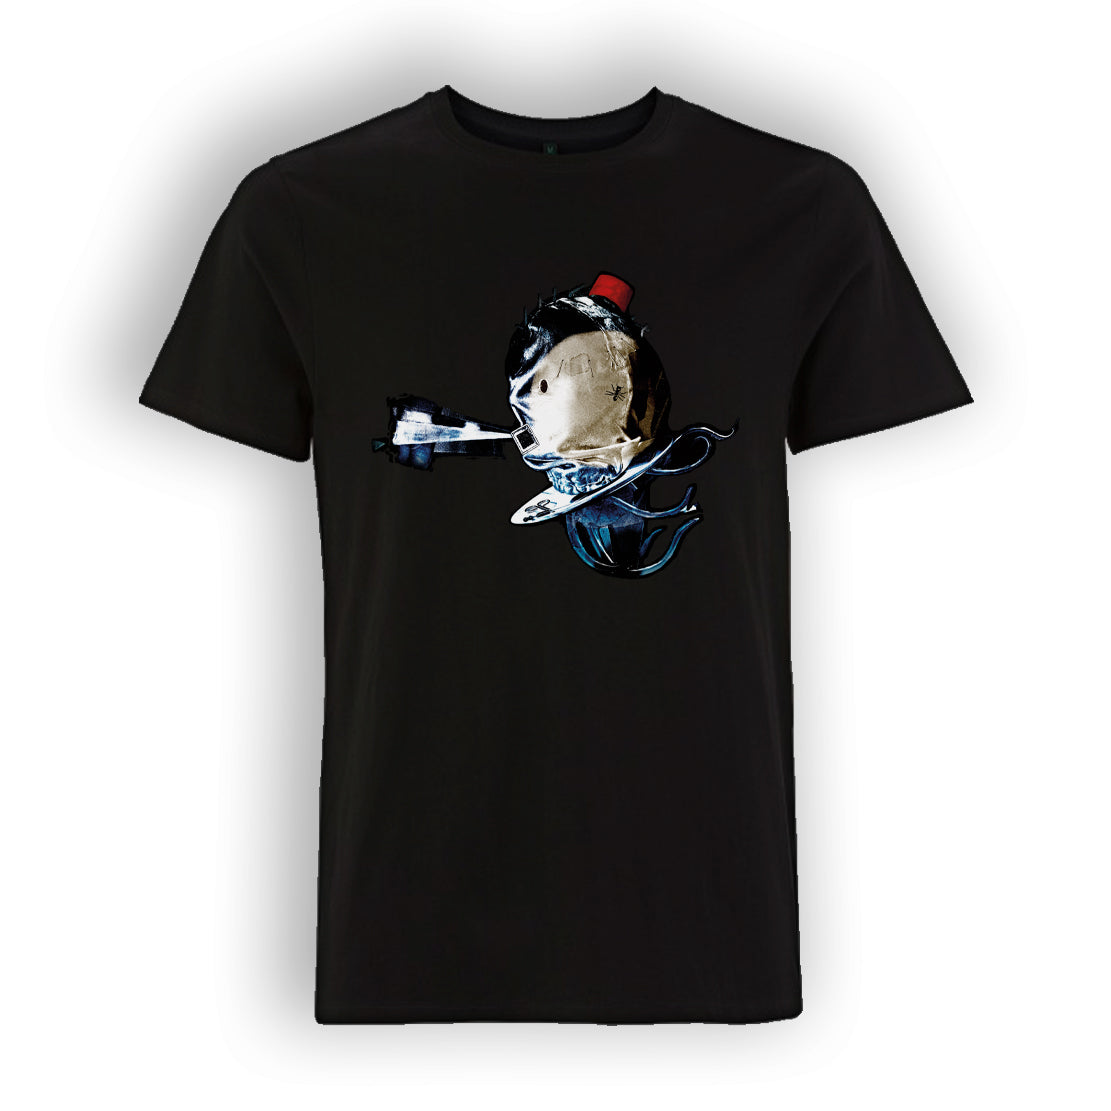 The Mars Volta - Black T-Shirt (Fleeting Dreams)